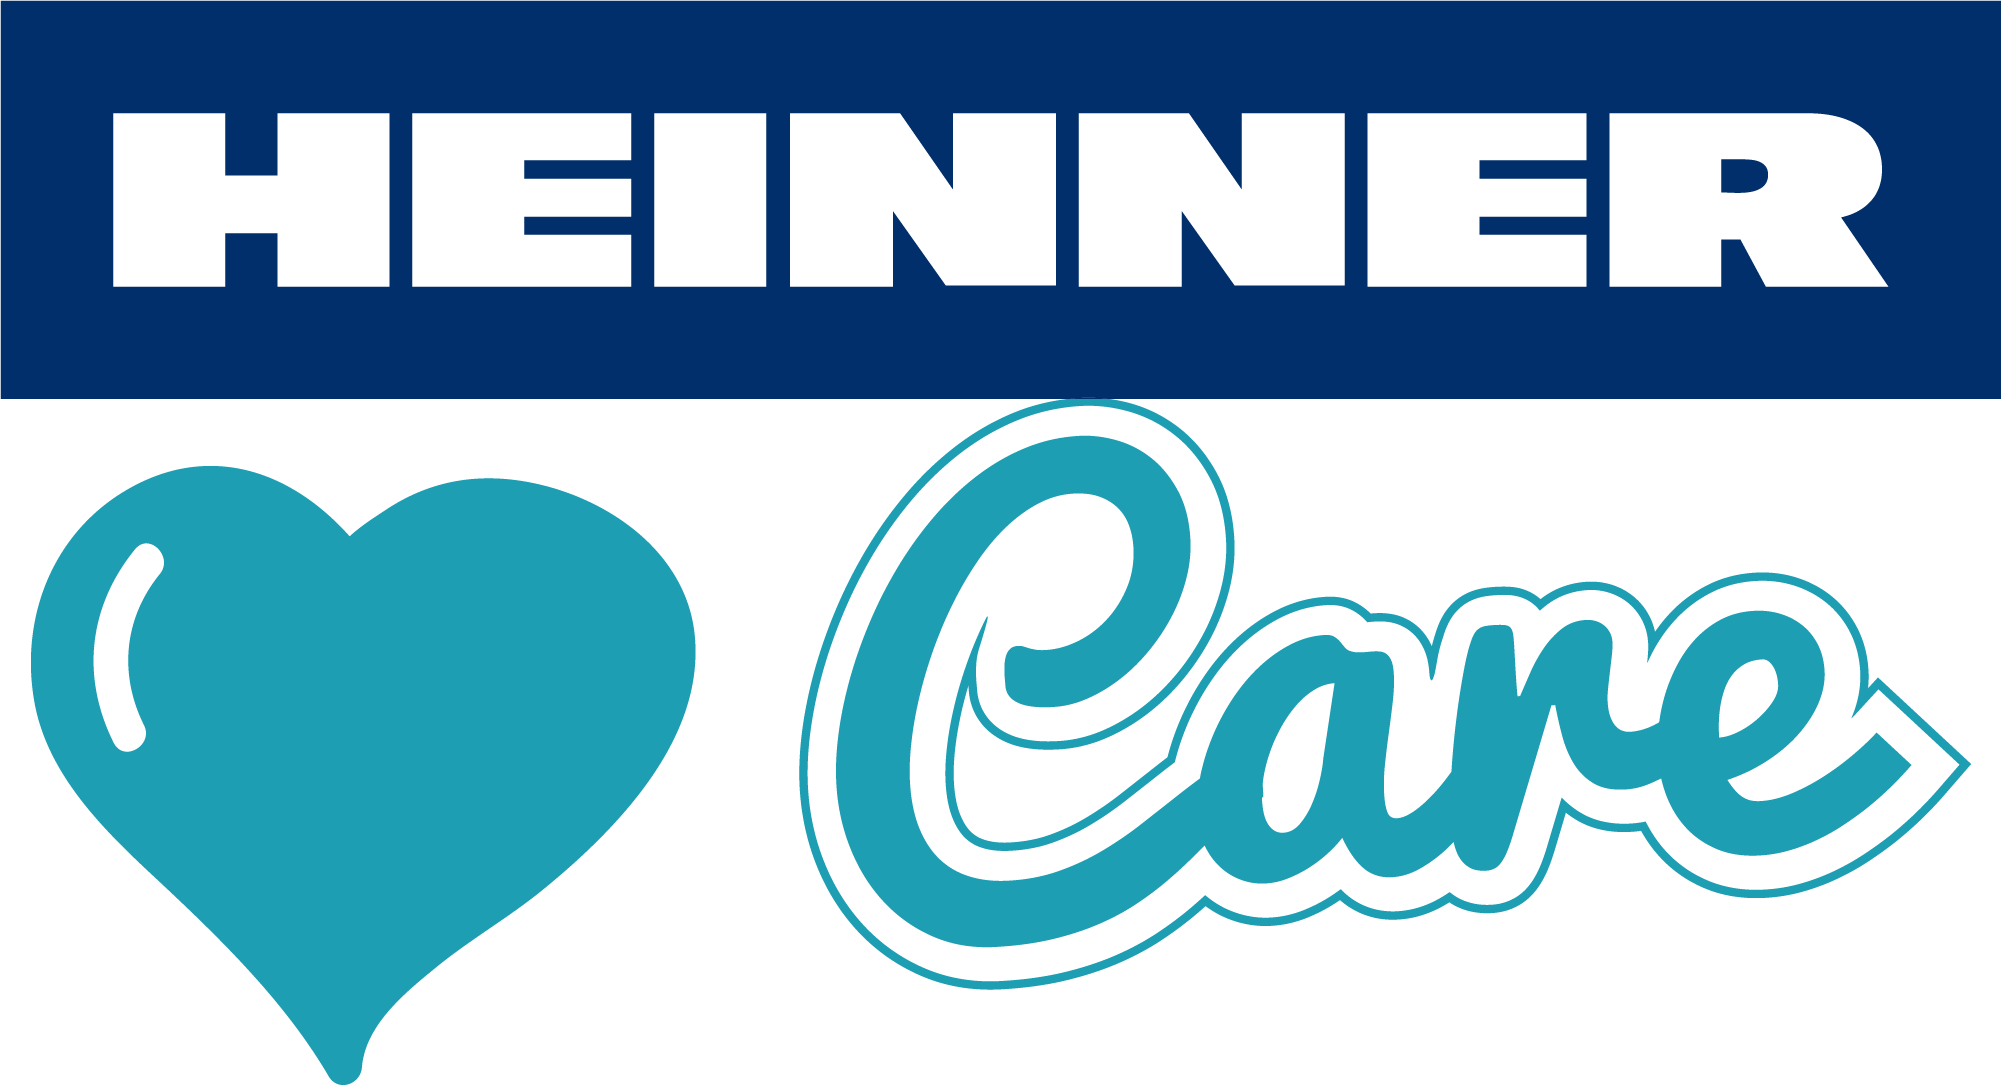 Heinner Care